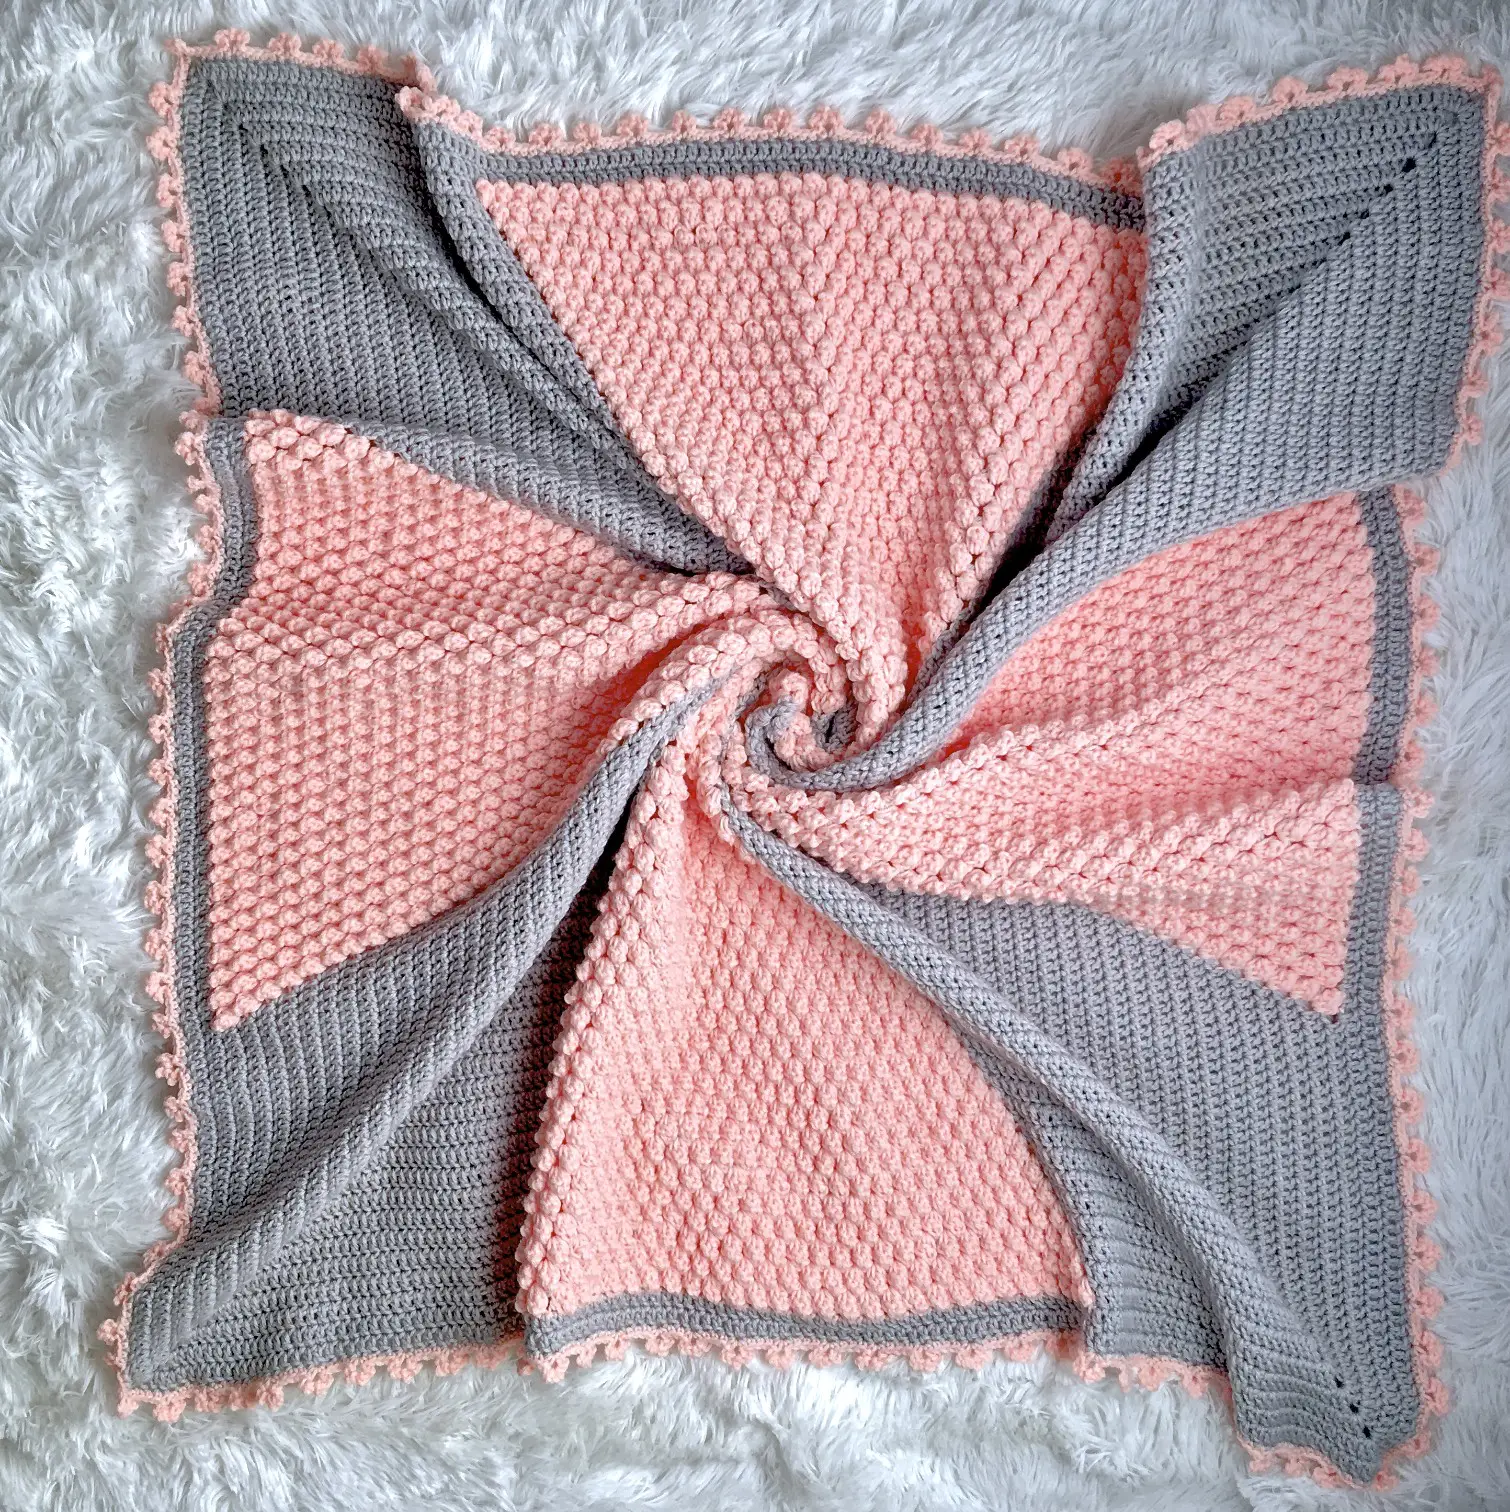 Cross My Heart Baby Blanket free crochet pattern